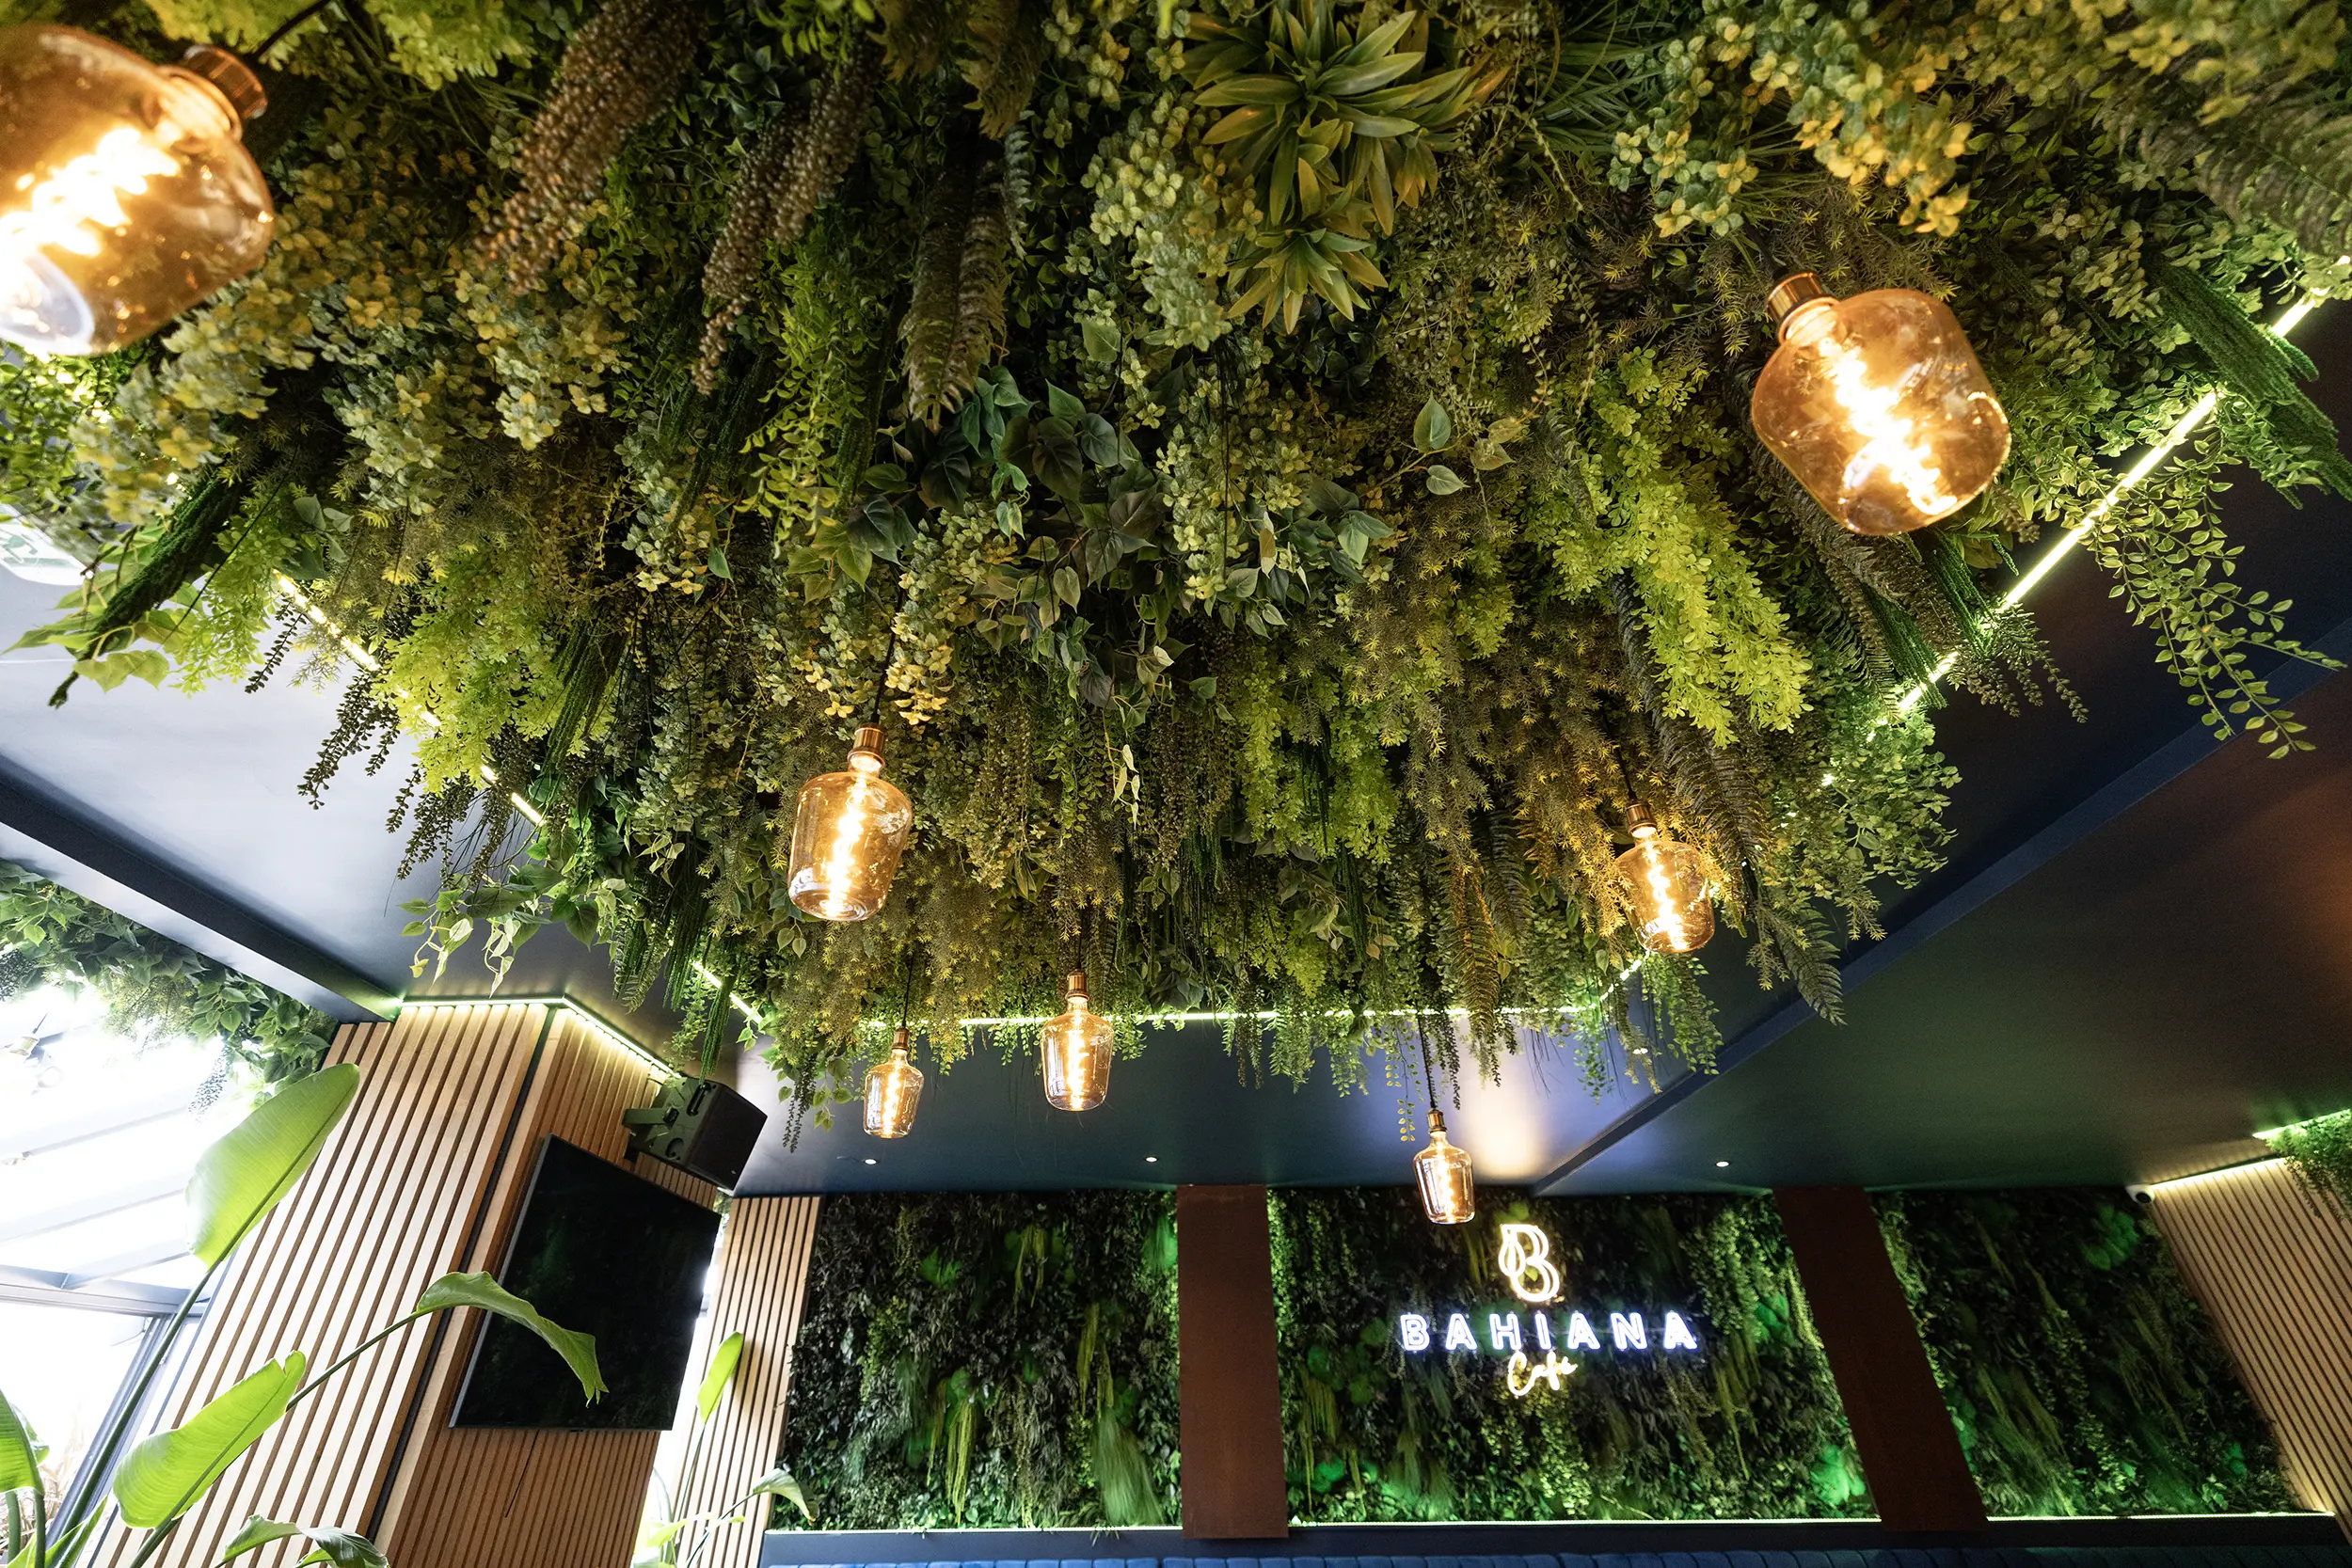 Plafond végétal et ampoules du Bahiana Café. C'est un bar restaurant à Paris aménagé en son et lumière par le Groupe Silam.